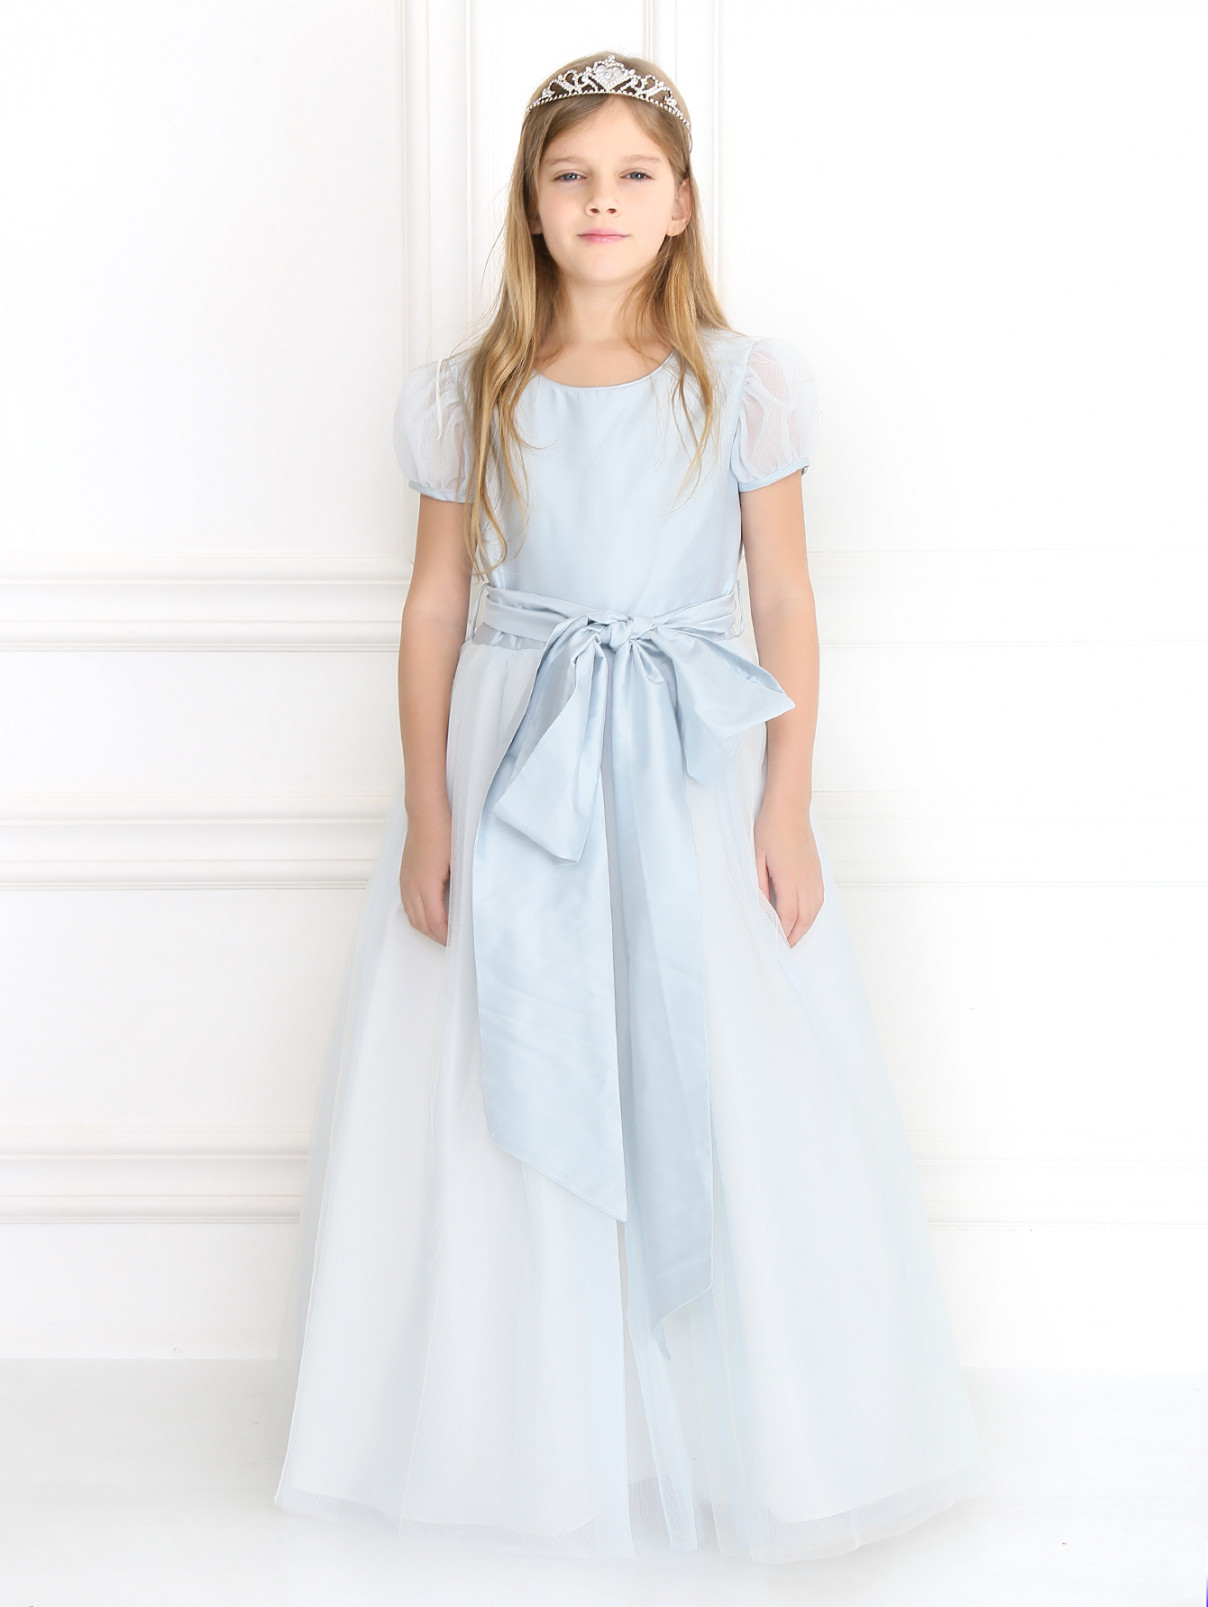 Шелковое платье с пышной юбкой Nicki Macfarlane  –  Модель Общий вид  – Цвет:  Синий